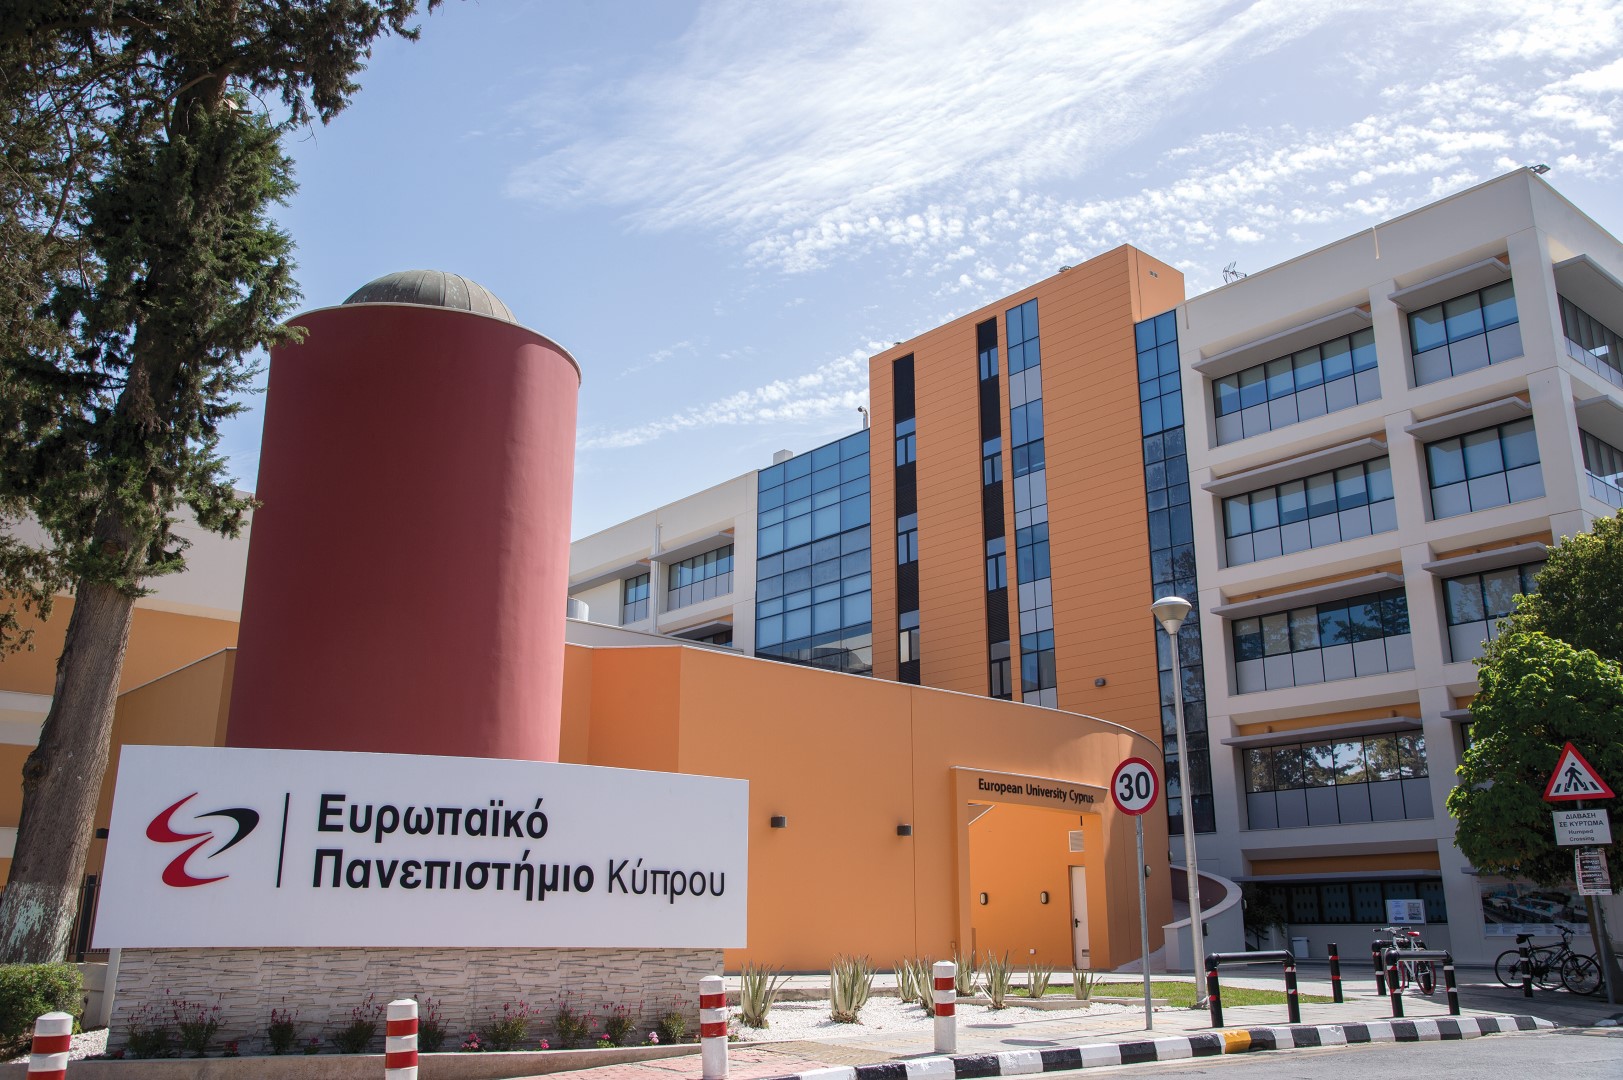 Επιτυχές Κύπρο-Ελλαδικό Συνέδριο Συμβουλευτικής και Επαγγελματικής Αγωγής από το Ευρωπαϊκό Πανεπιστήμιο Κύπρου